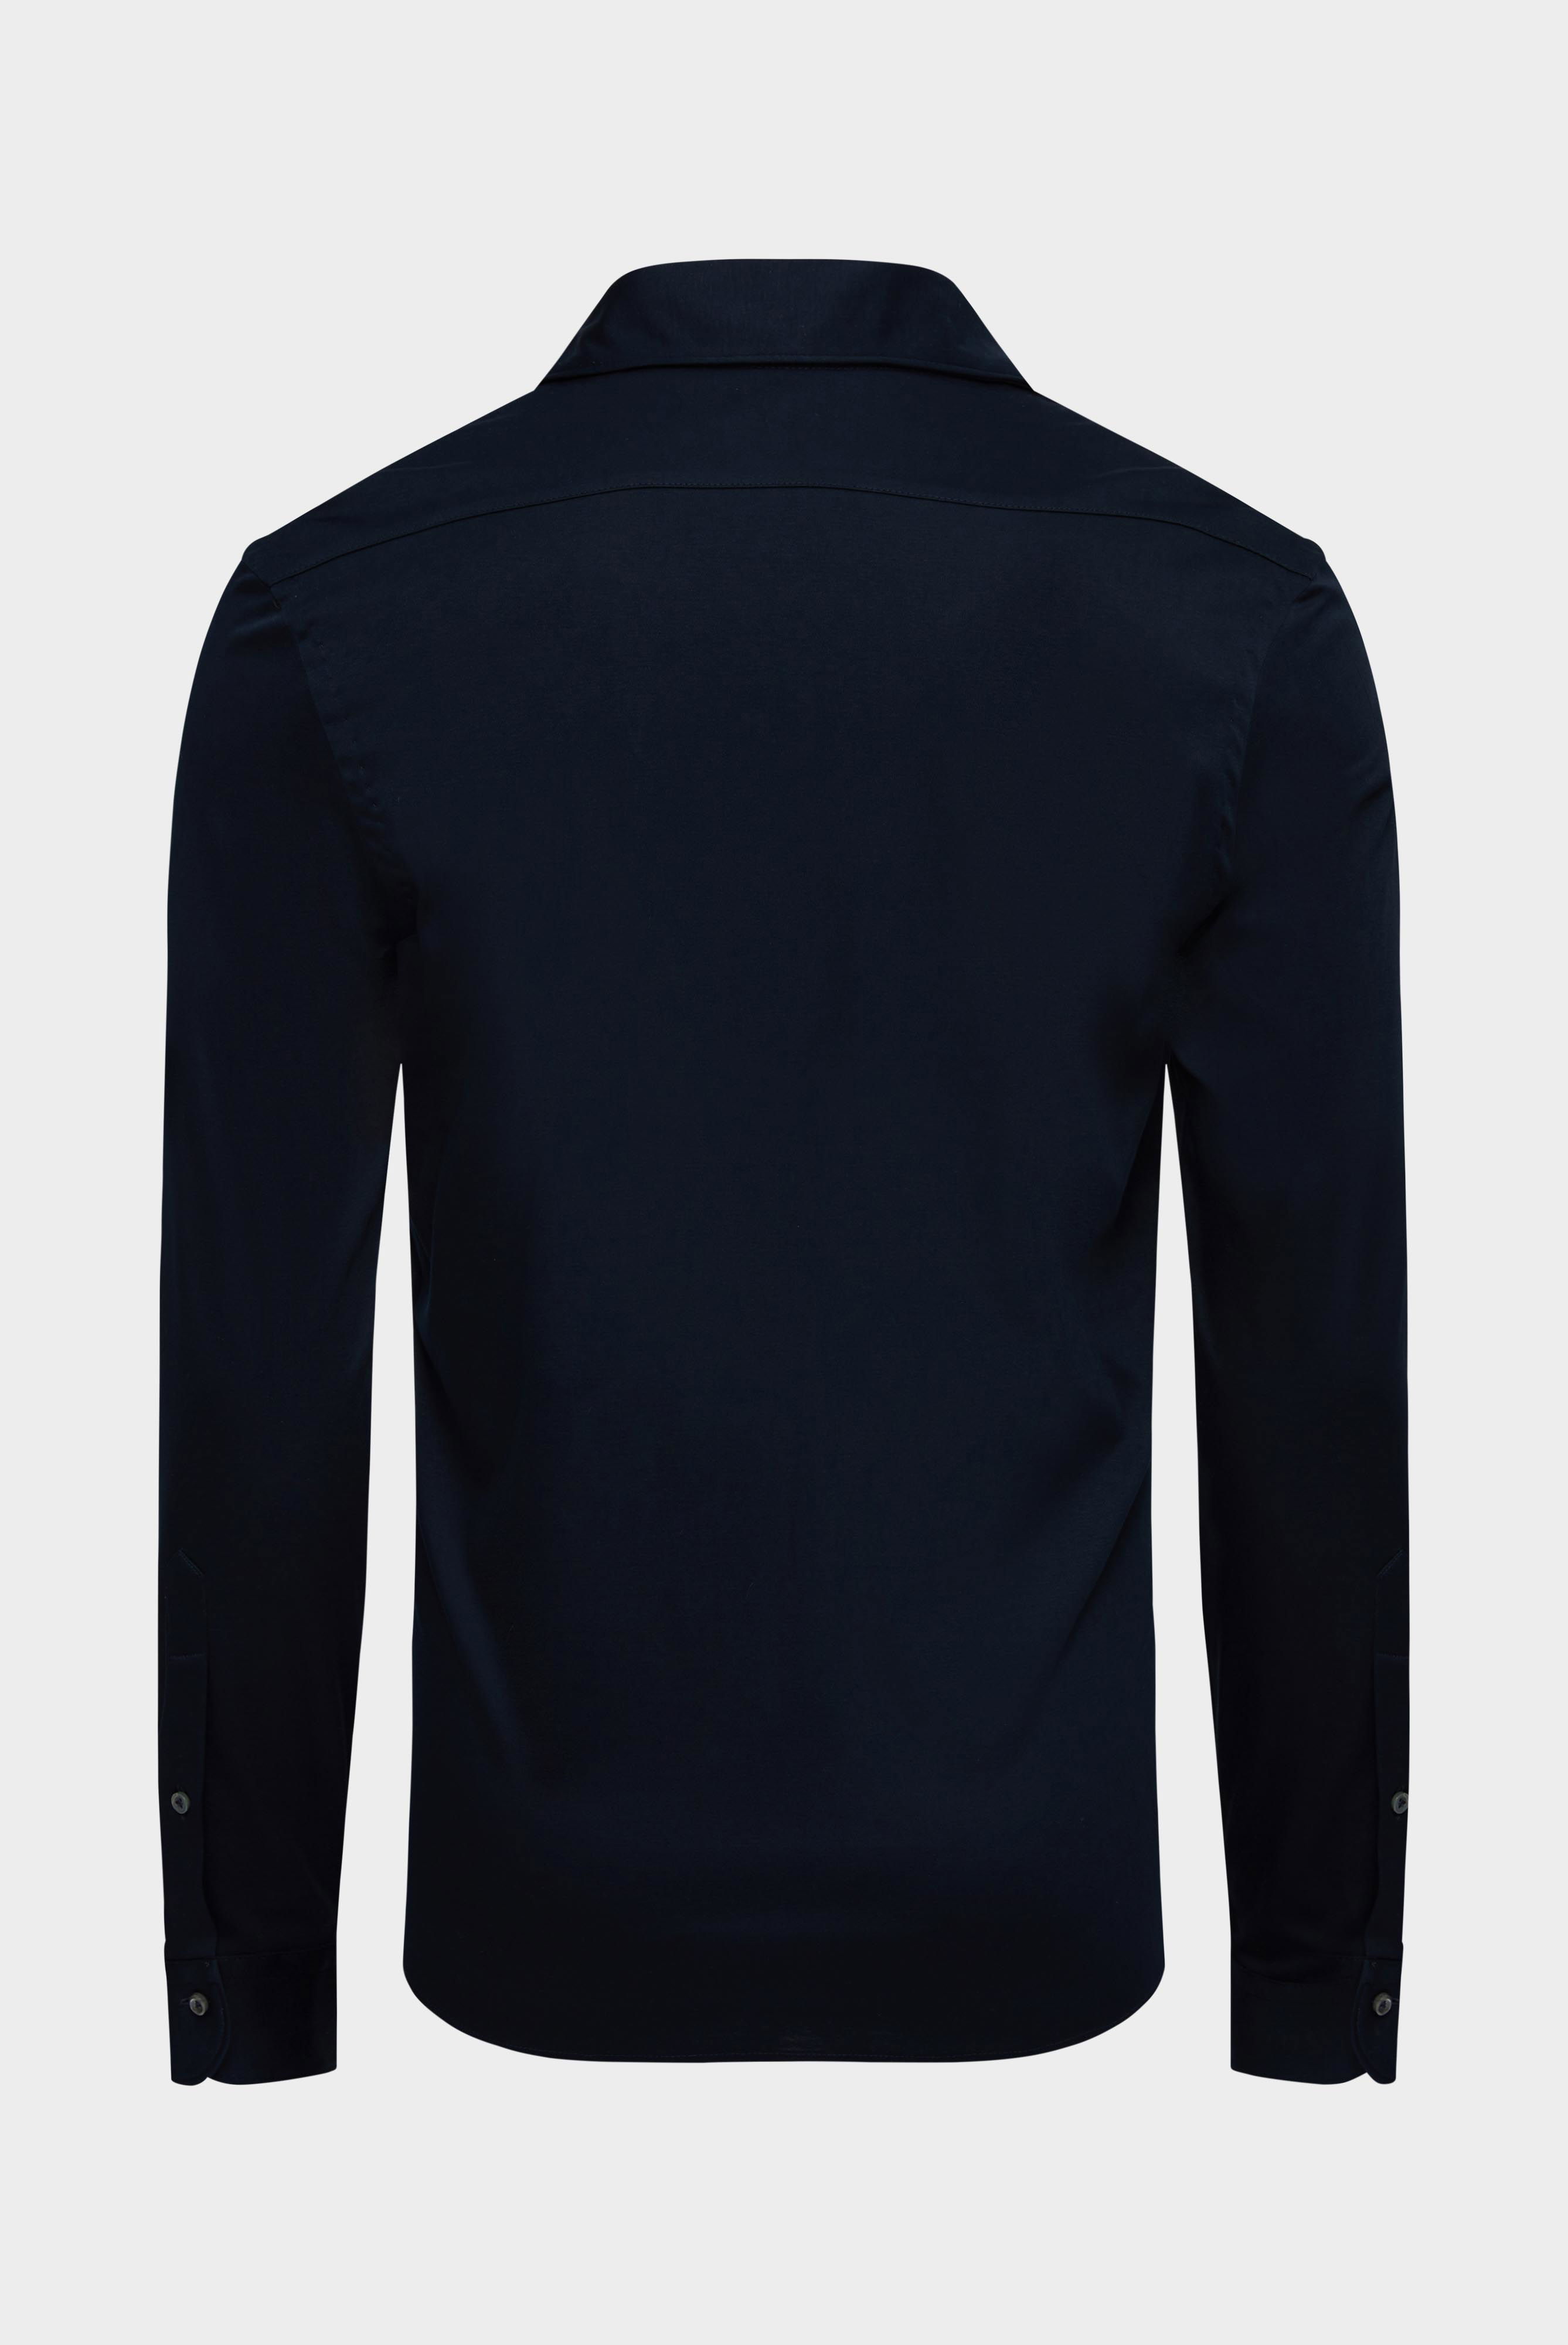 Jersey Hemden+Jersey Hemd aus Schweizer Baumwolle Slim Fit+20.1682.UC.180031.790.L